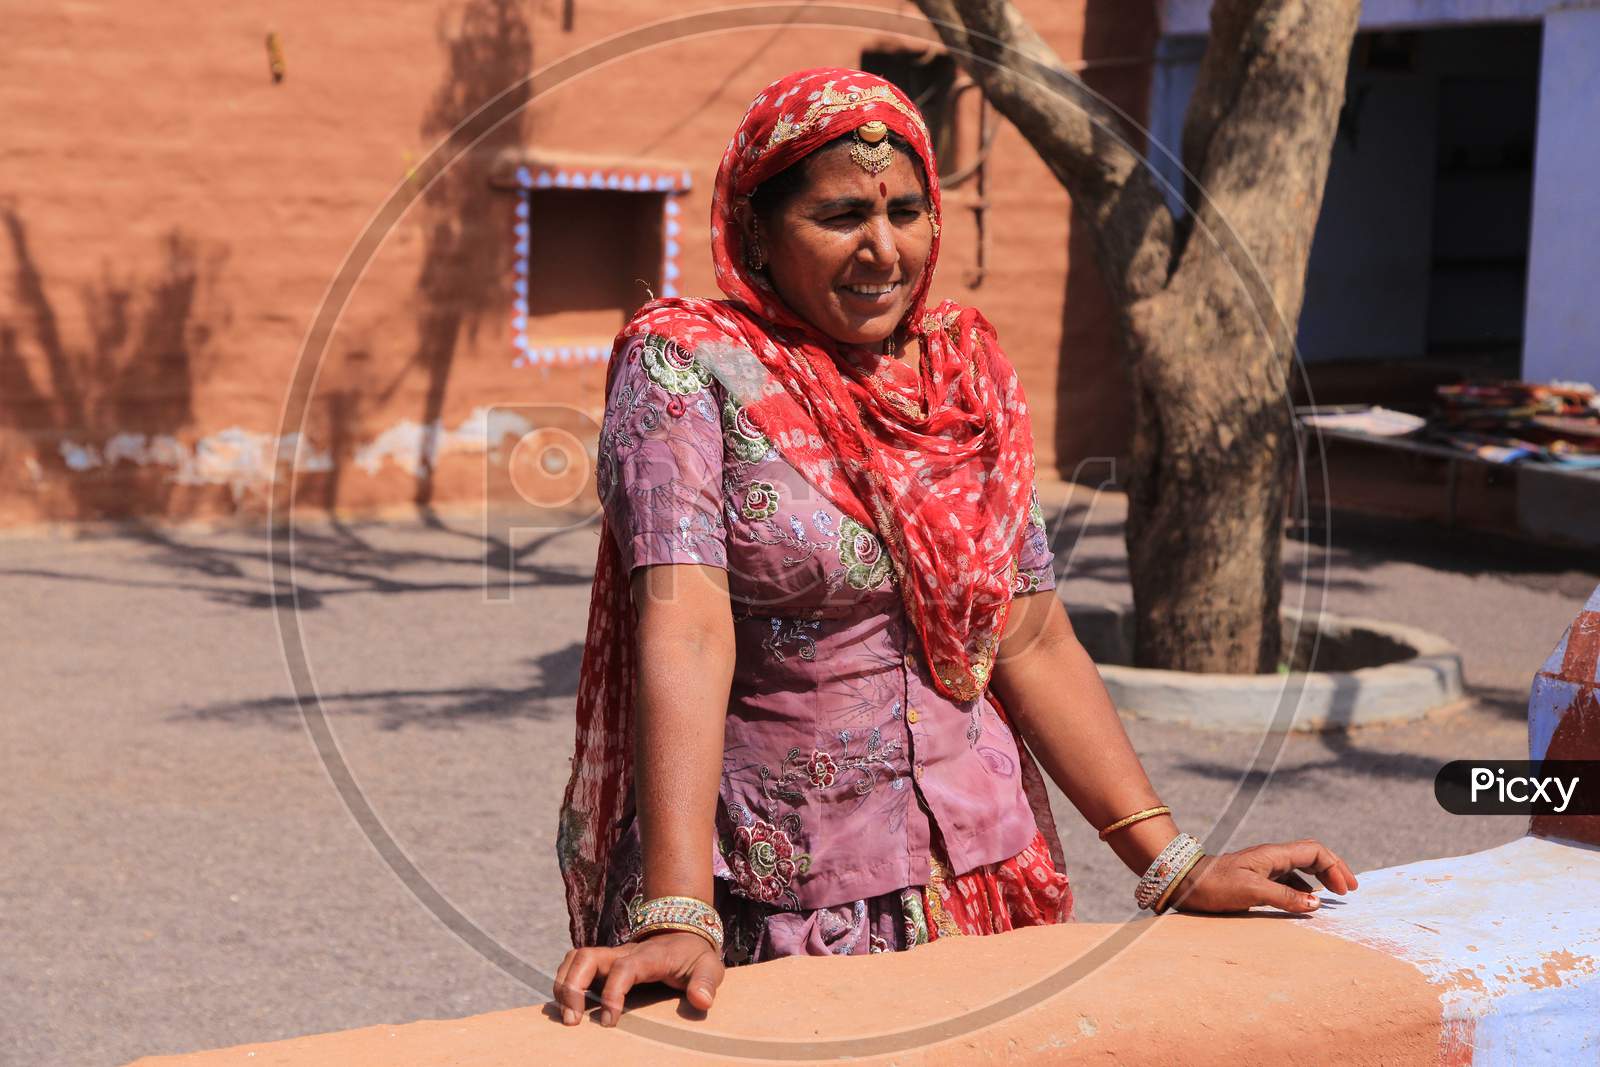 Rajasthani woman smiling